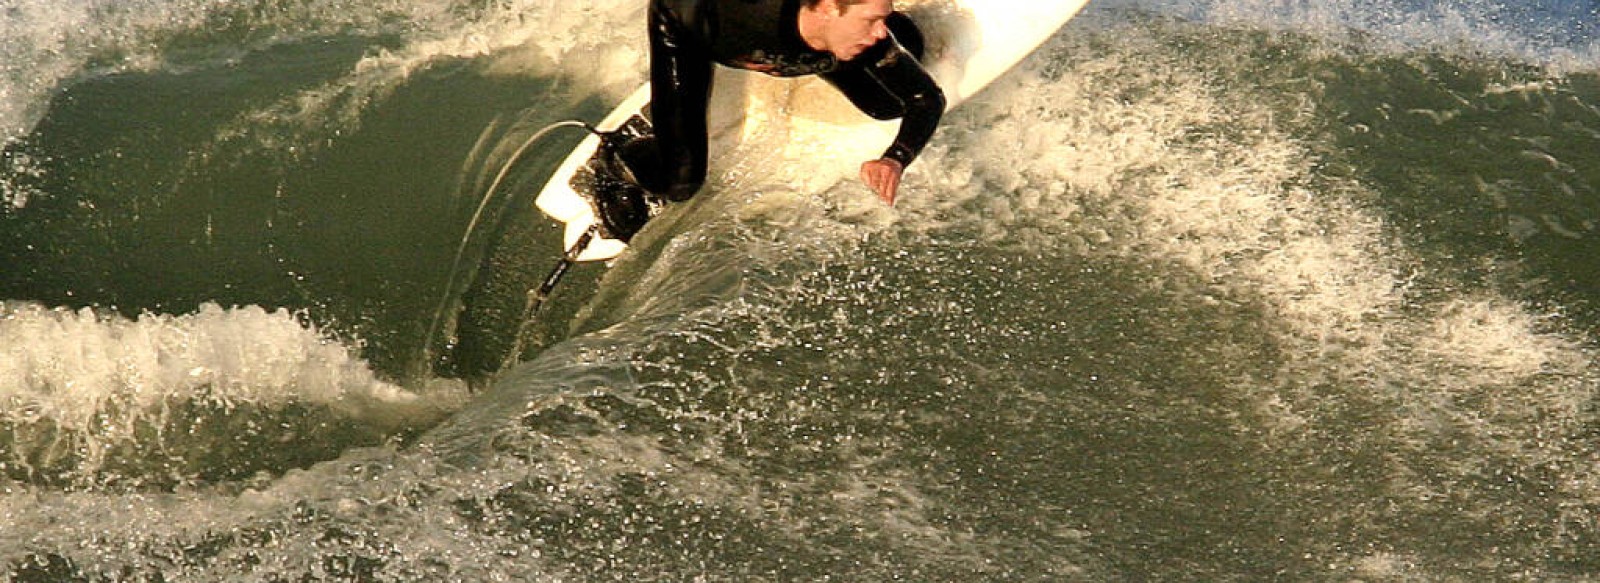 BRETEAM SURF CLUB